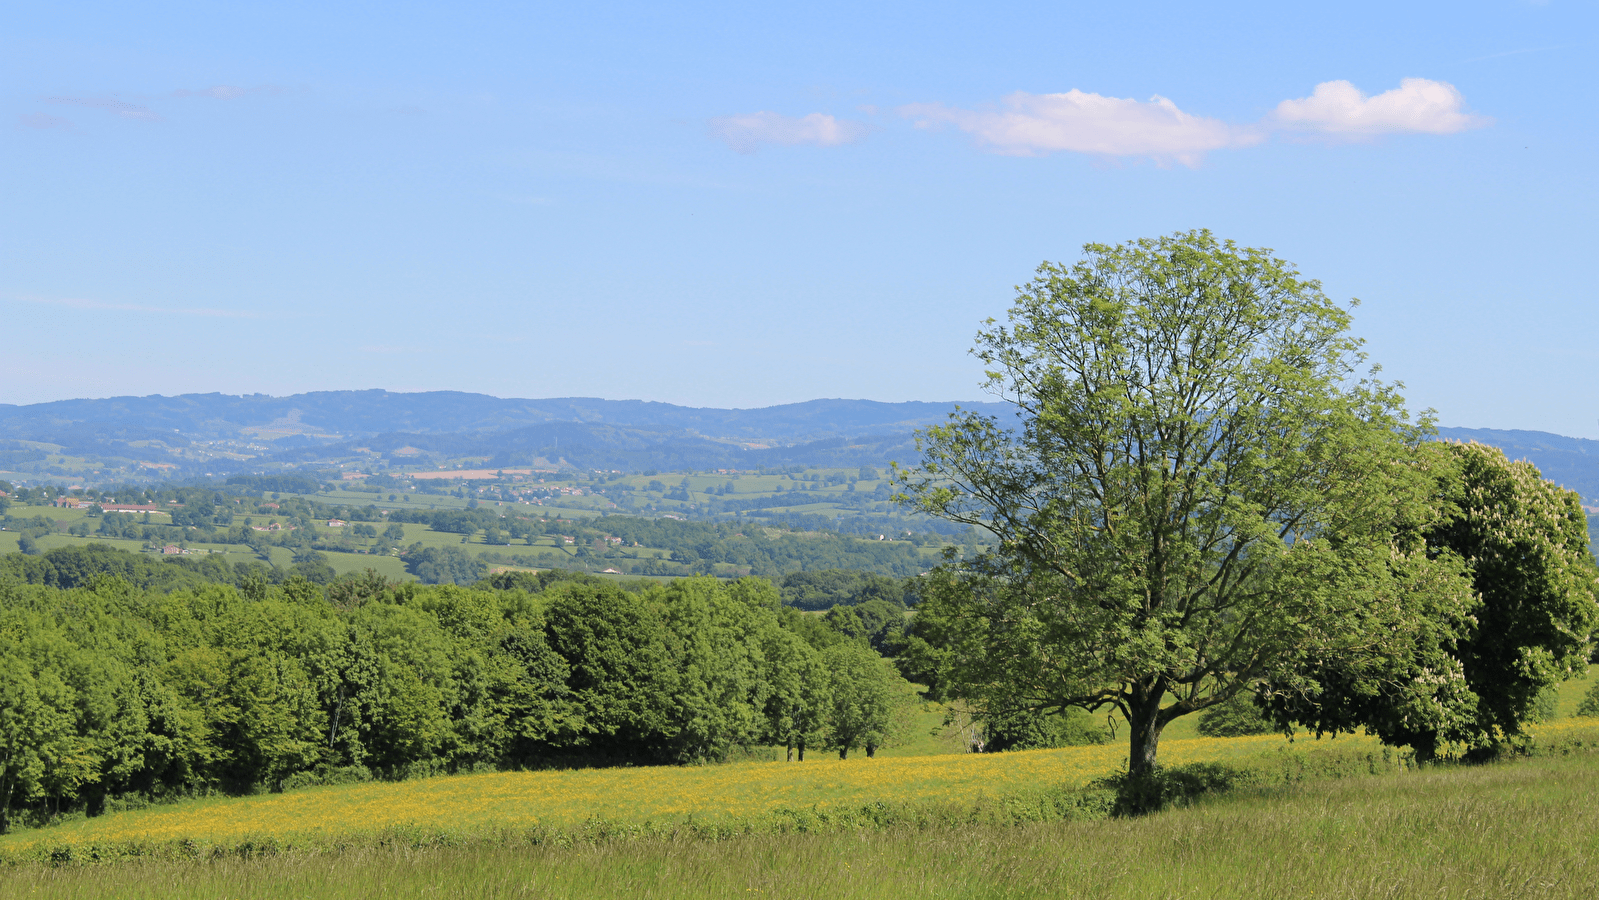 The Brionnais hills